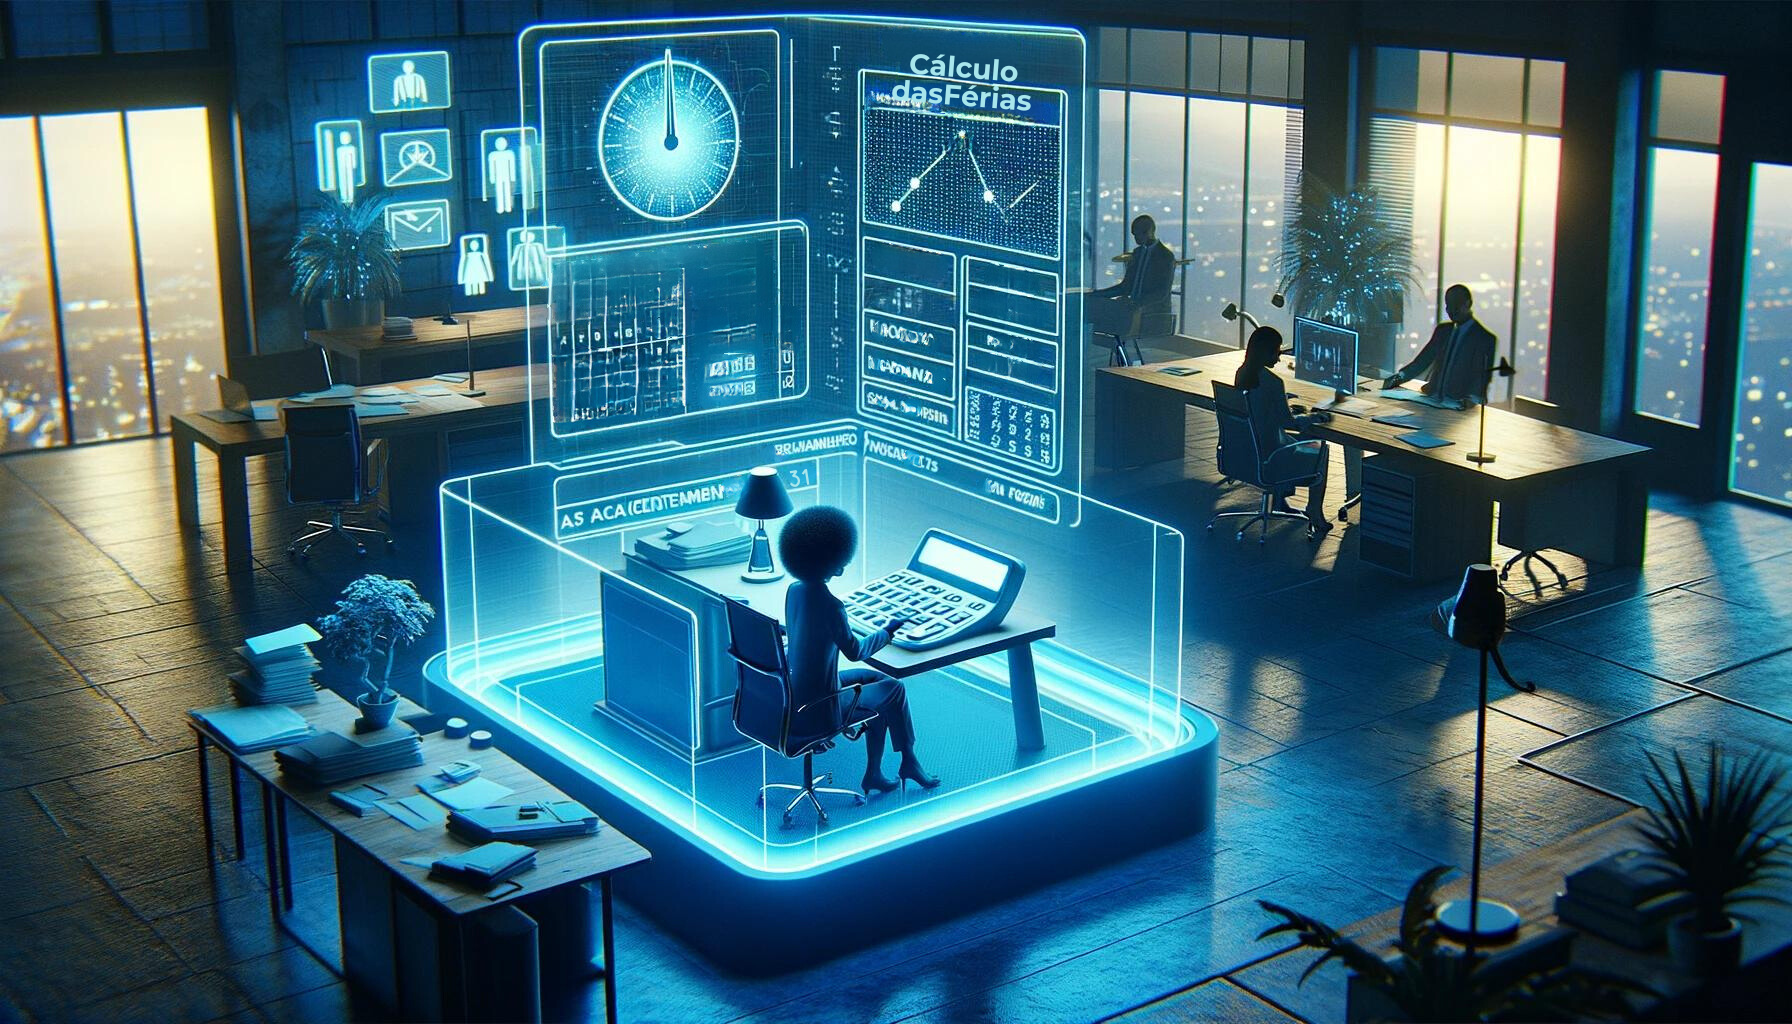 Profissional afrodescendente utiliza ferramentas computacionais avançadas para cálculo exato de férias em um escritório futurista azul.